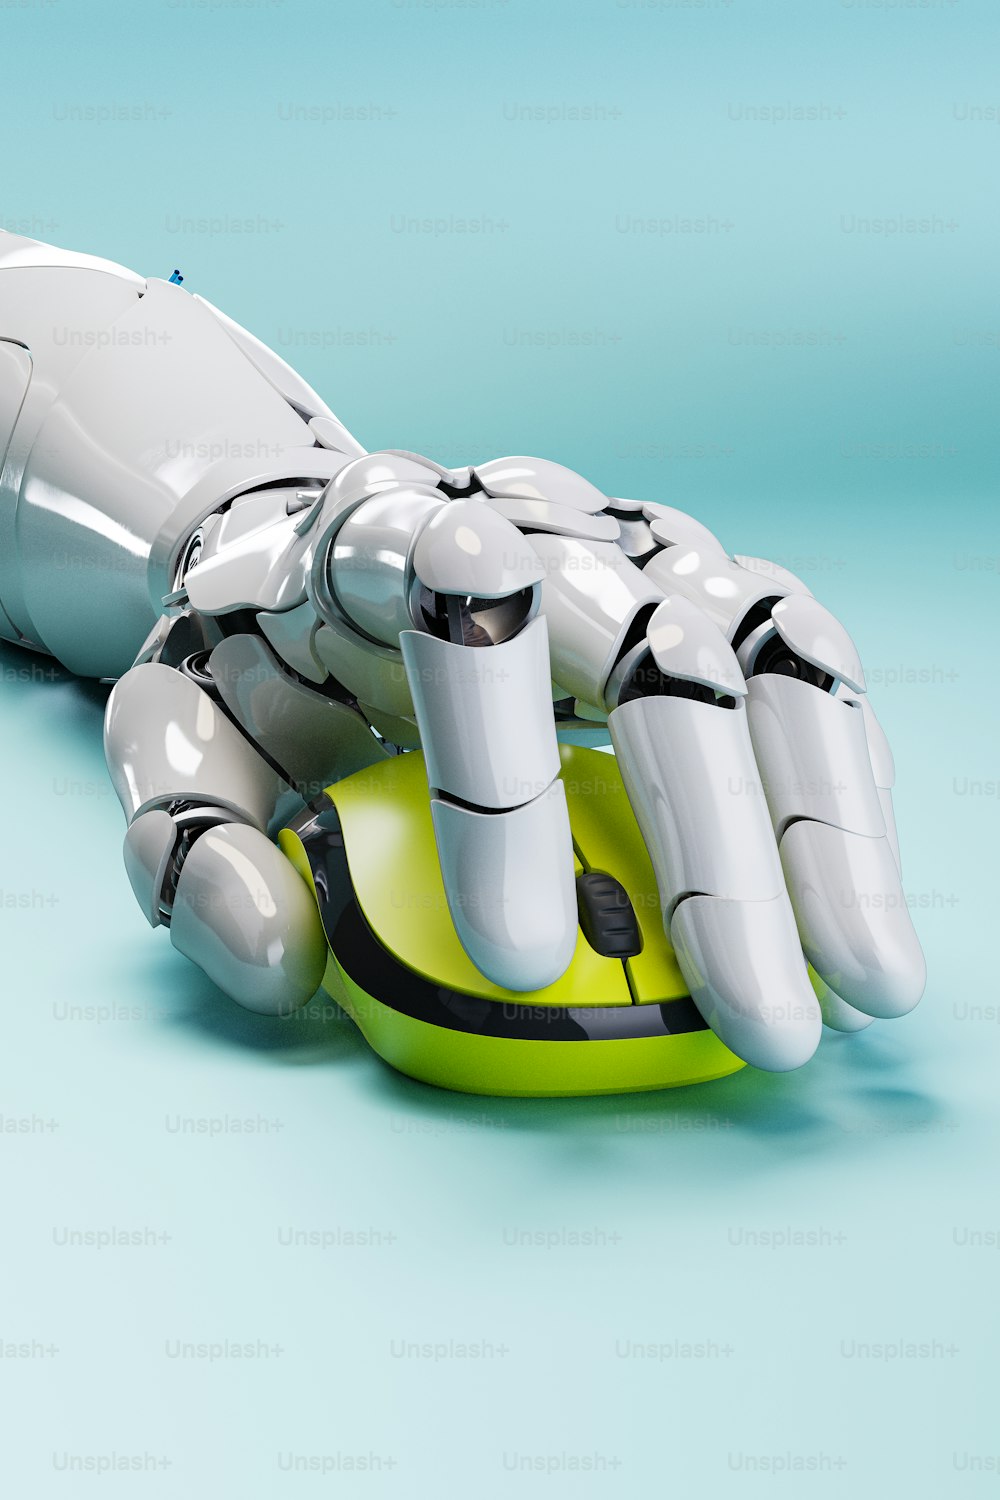 Una mano robótica que está sentada encima de un objeto verde